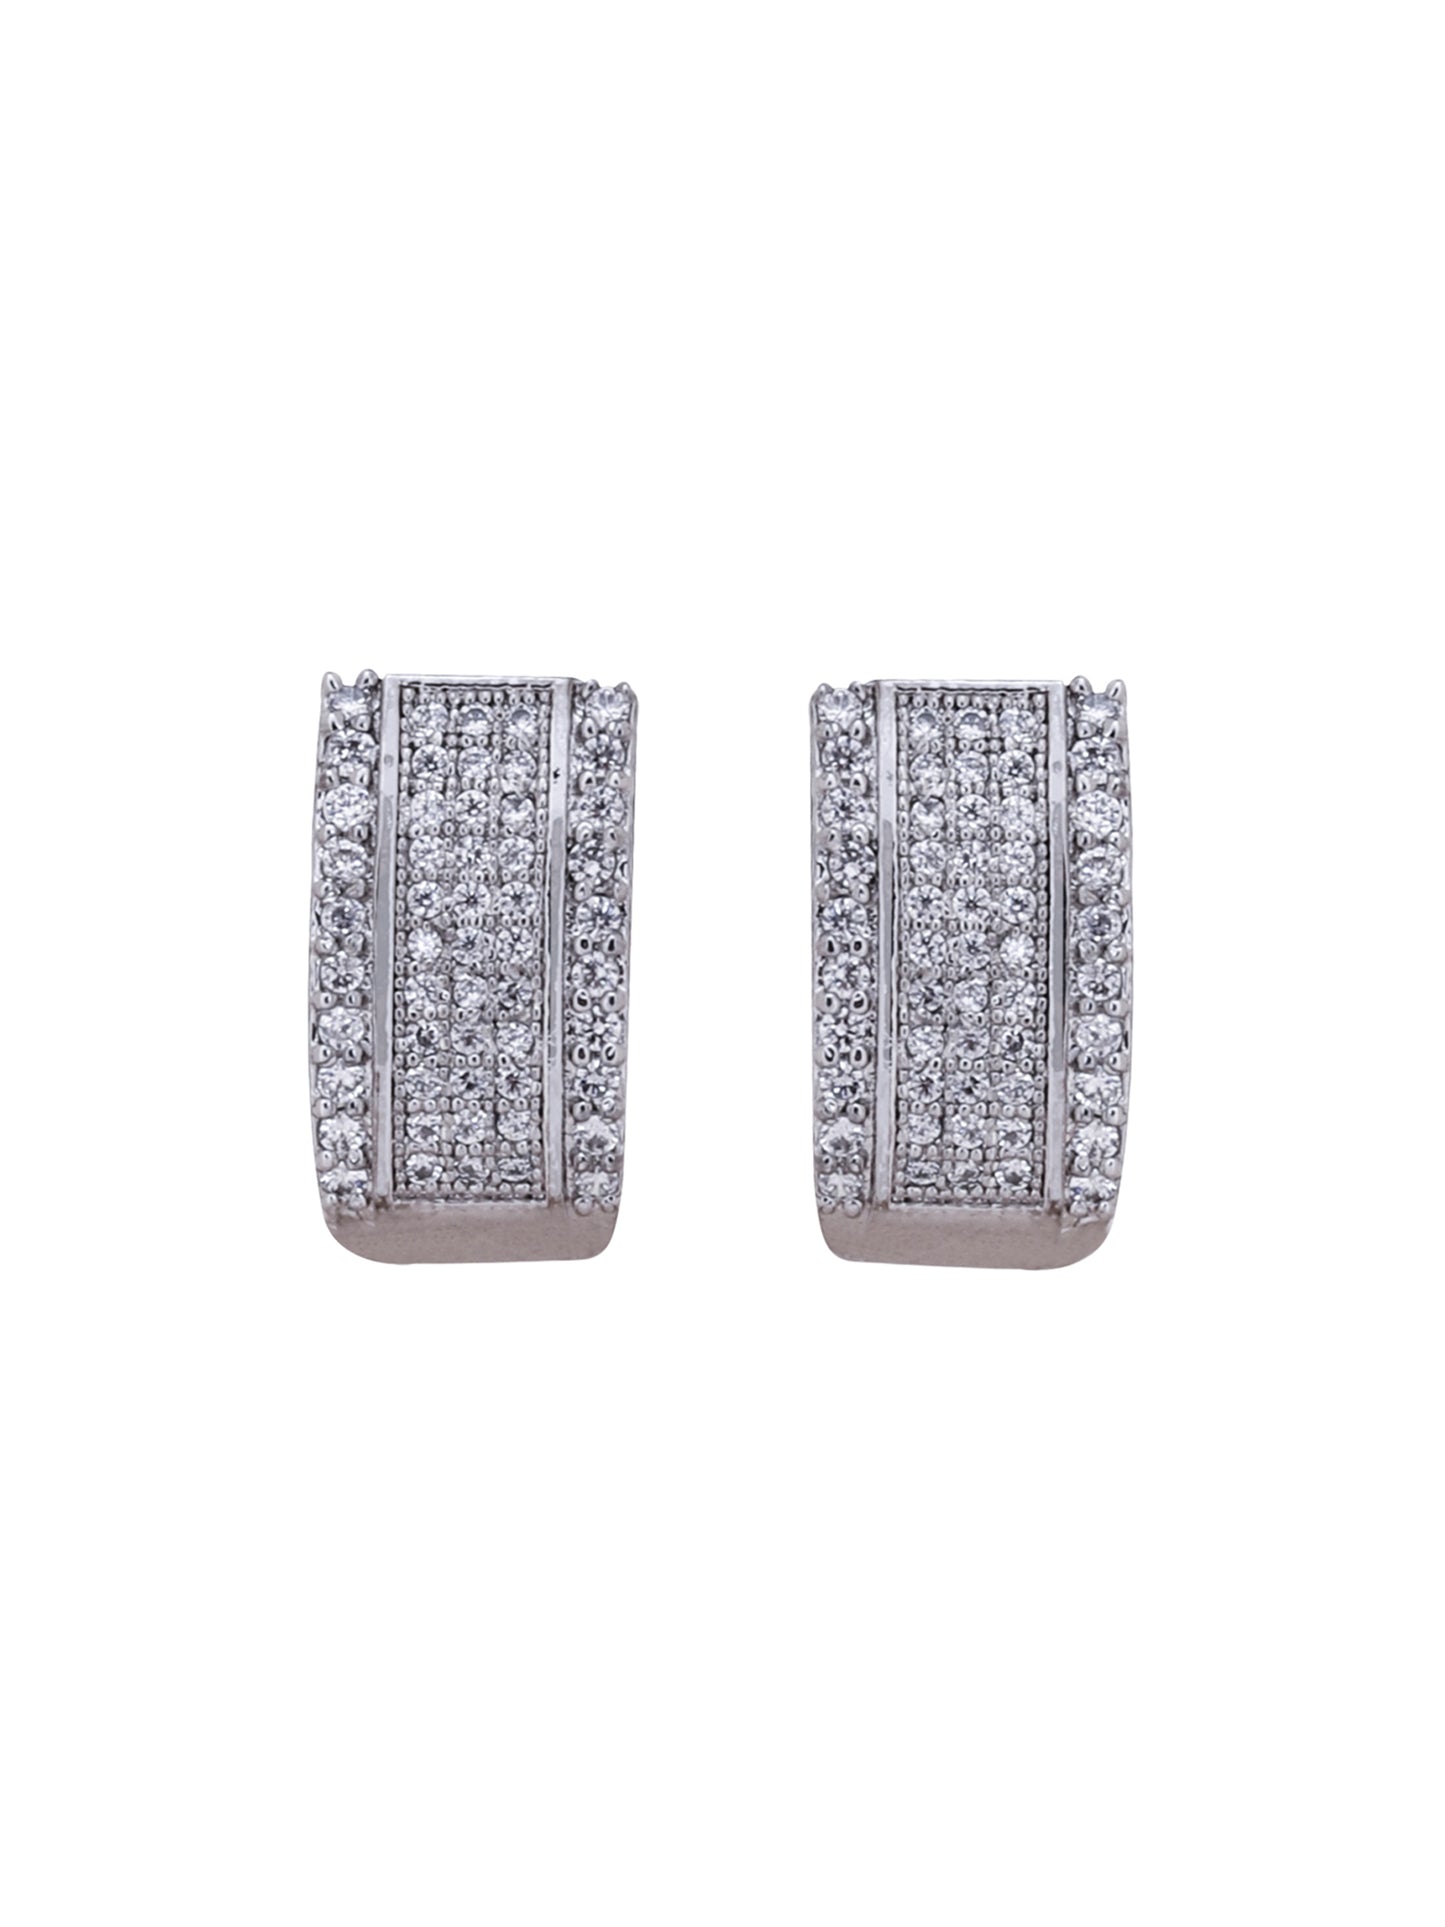 Shining CZ Earrings (Silver)